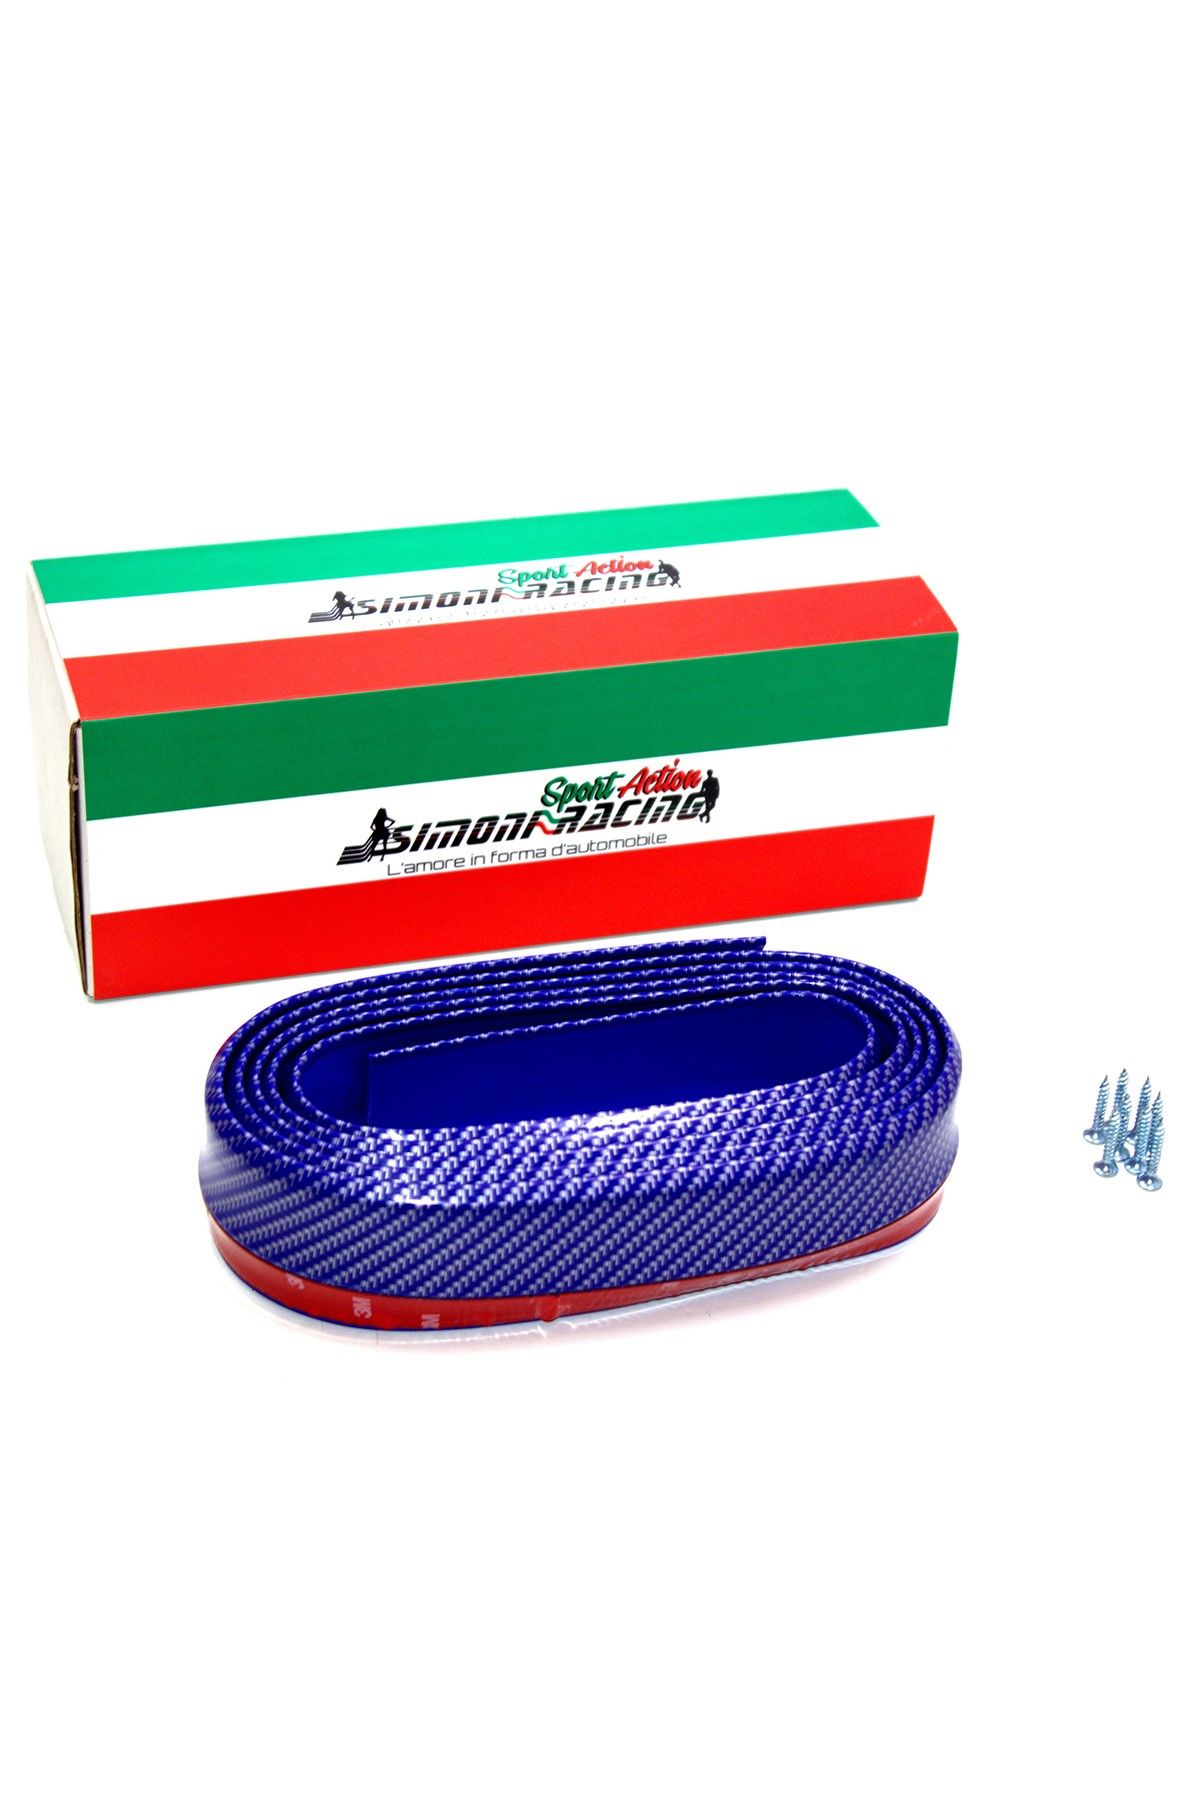 Simoni Racing Labbro Carbonio - Blu Mavi Karbon Lip Smn102881